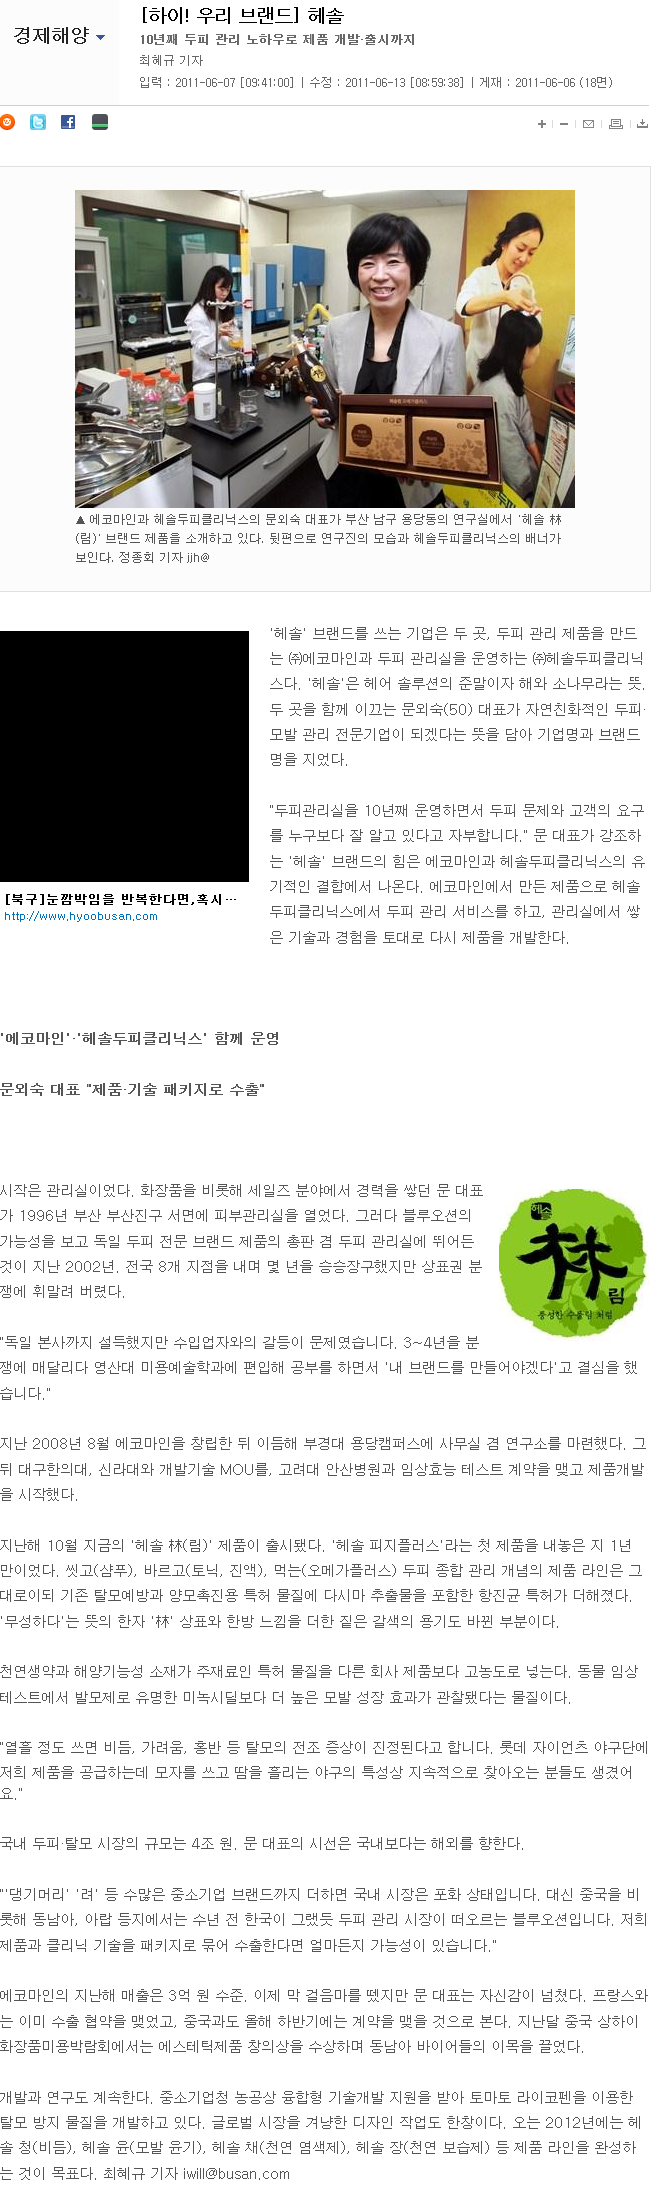 [부산일보-2011.06.07]-[하이! 우리 브랜드] 헤솔